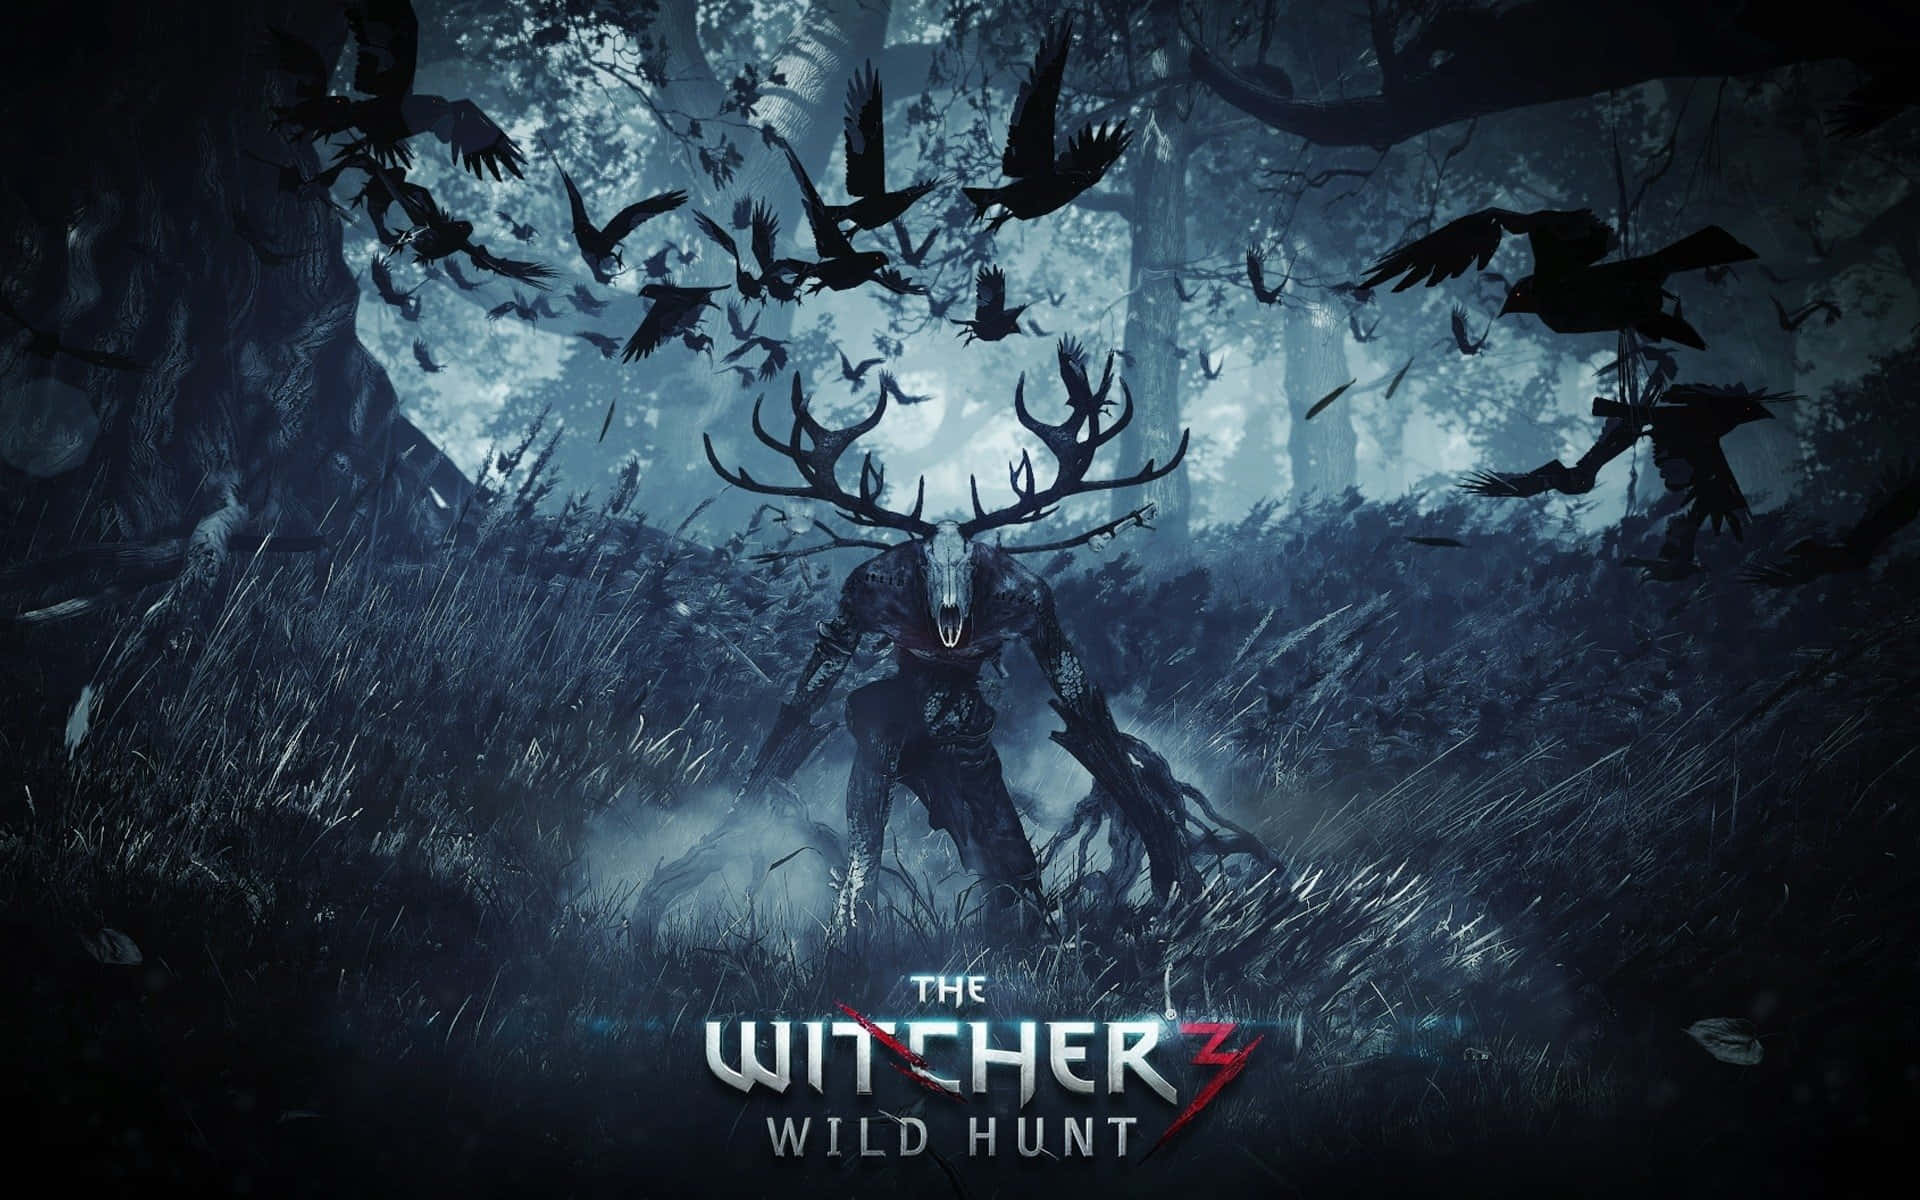 Geraltdi Rivia, L'iconico Witcher In Azione